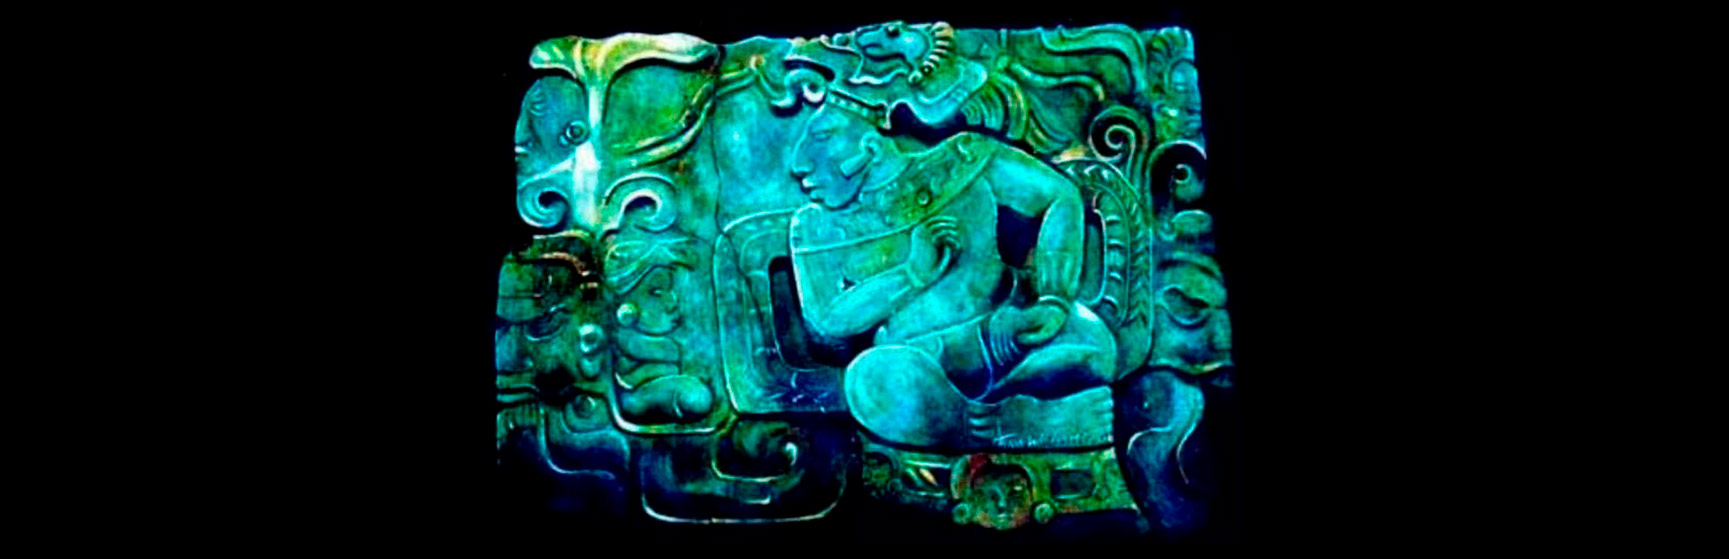 Pectorales de jadeíta de Chichen Itzá